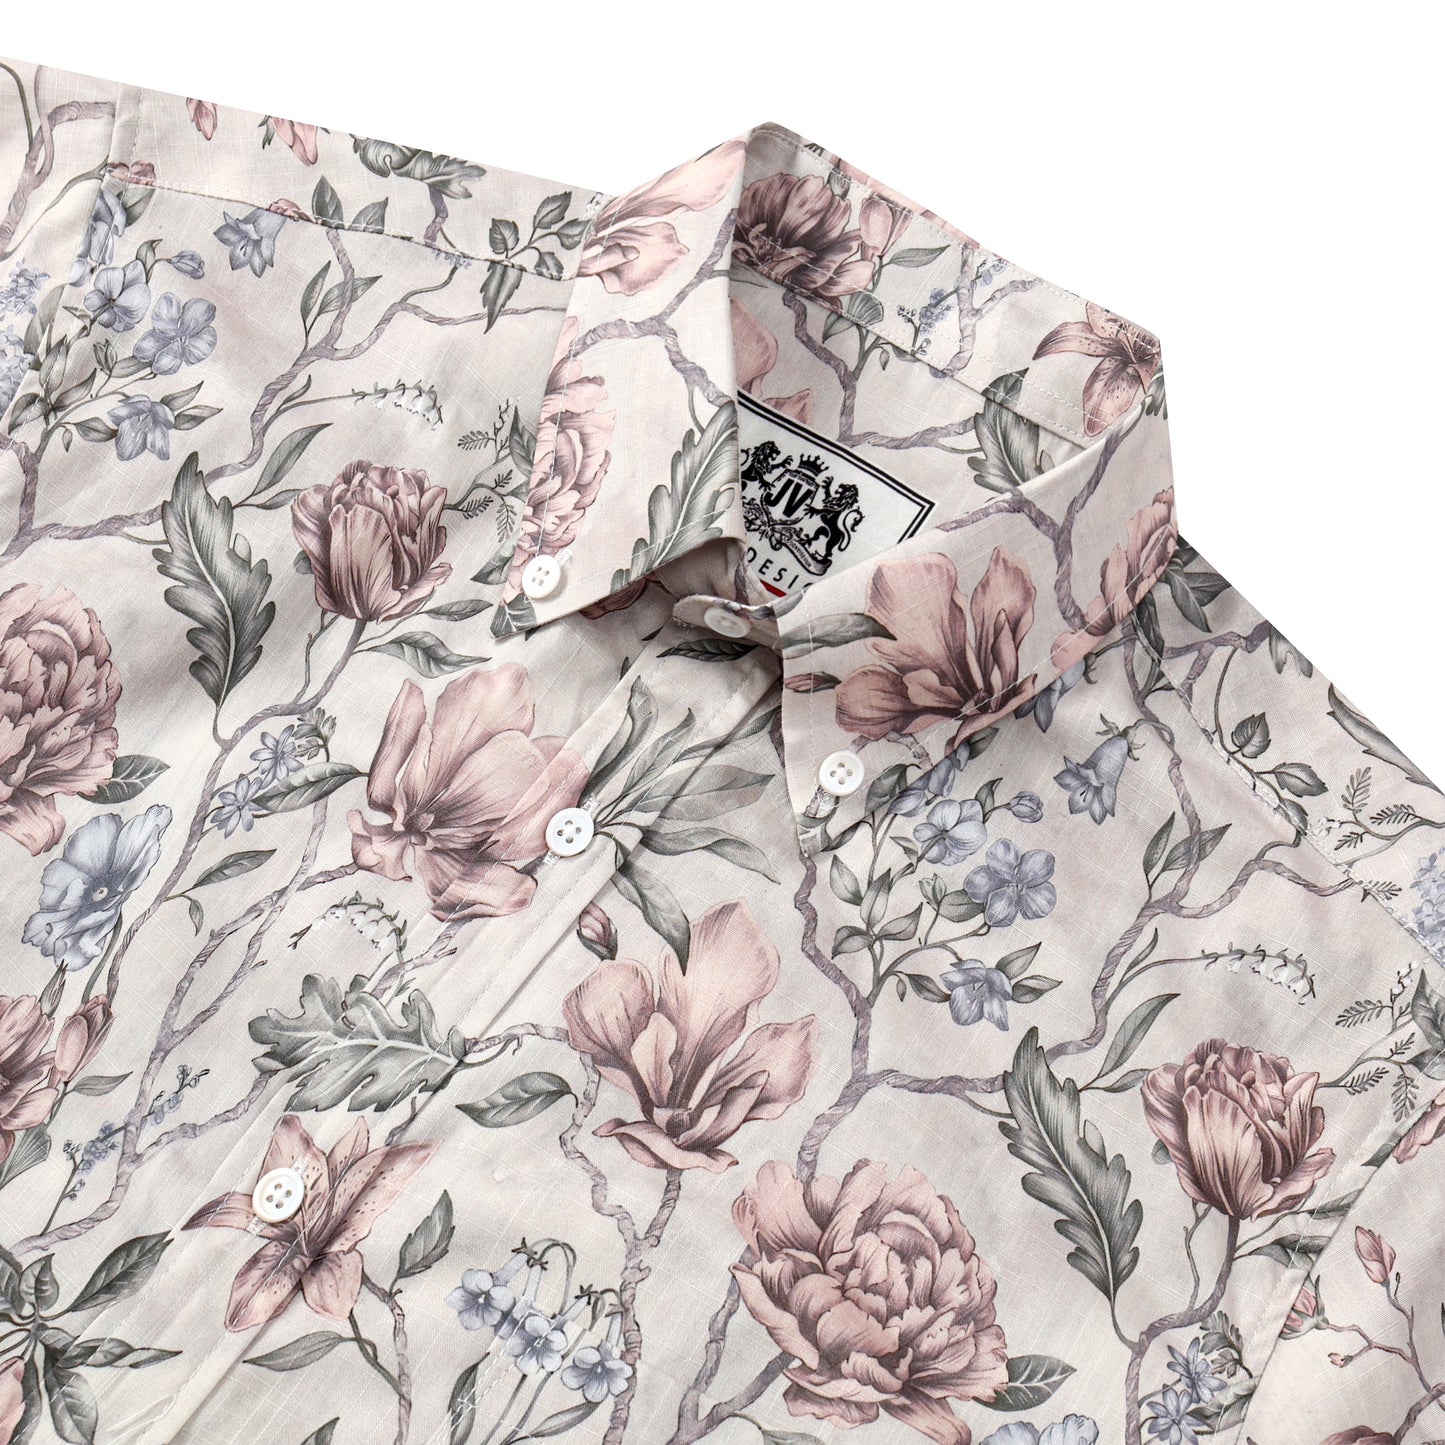 Floral Pattern Button Short Sleeve Shirt